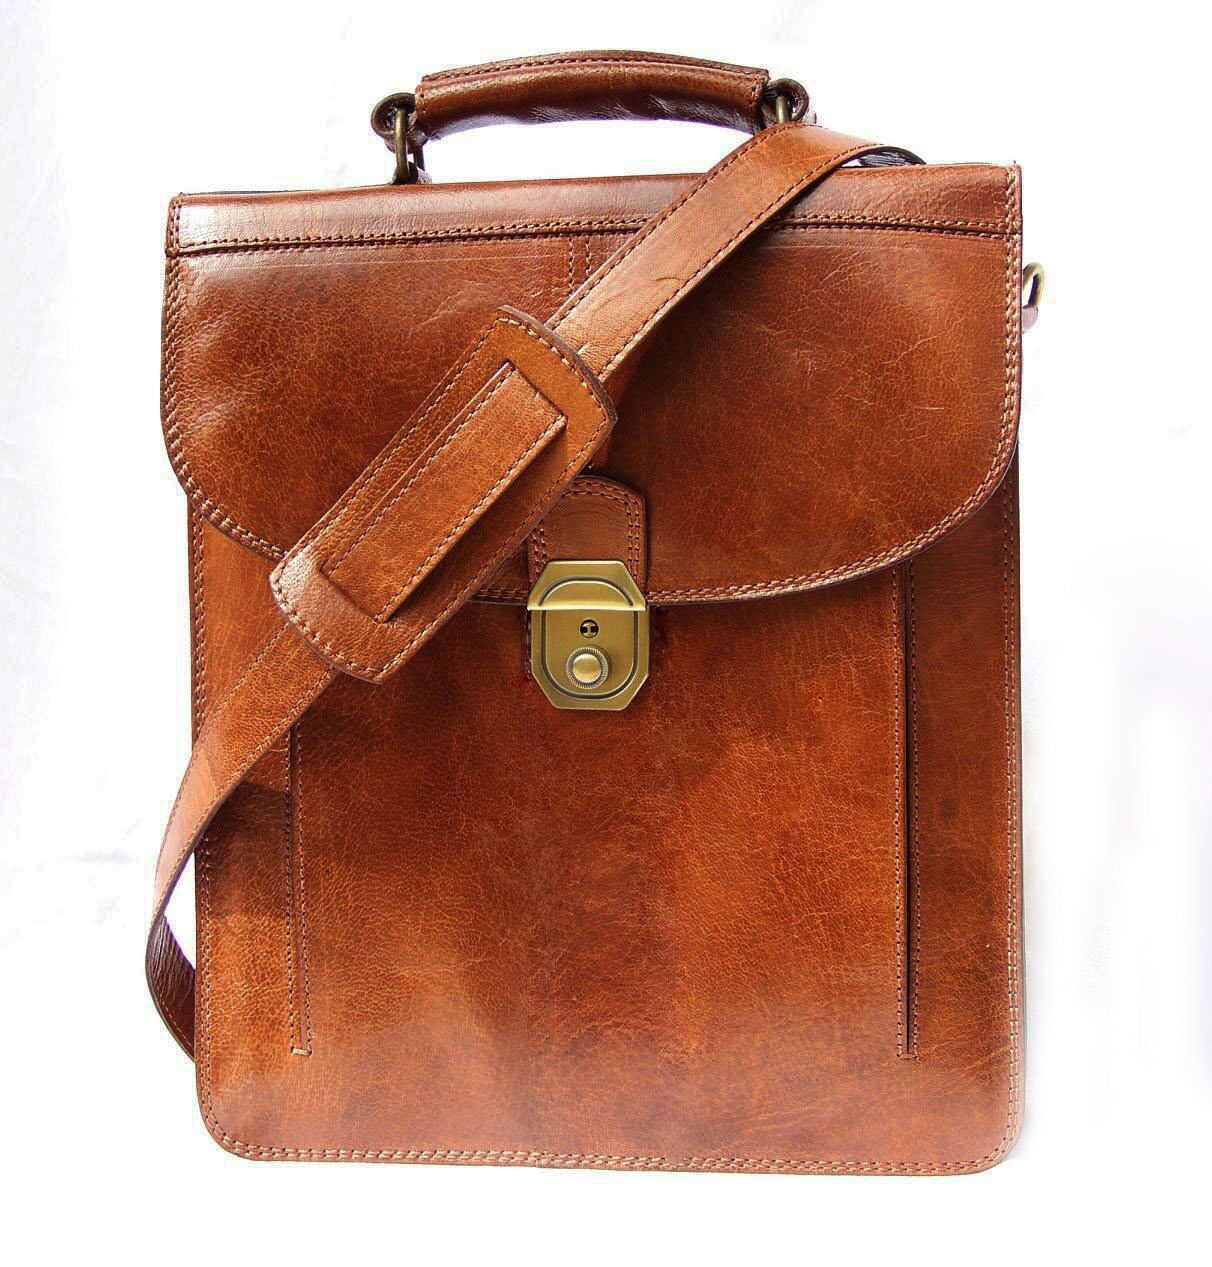 Tan Leather Cross-body Bag Handbag Messenger Shoulder Bag Elie